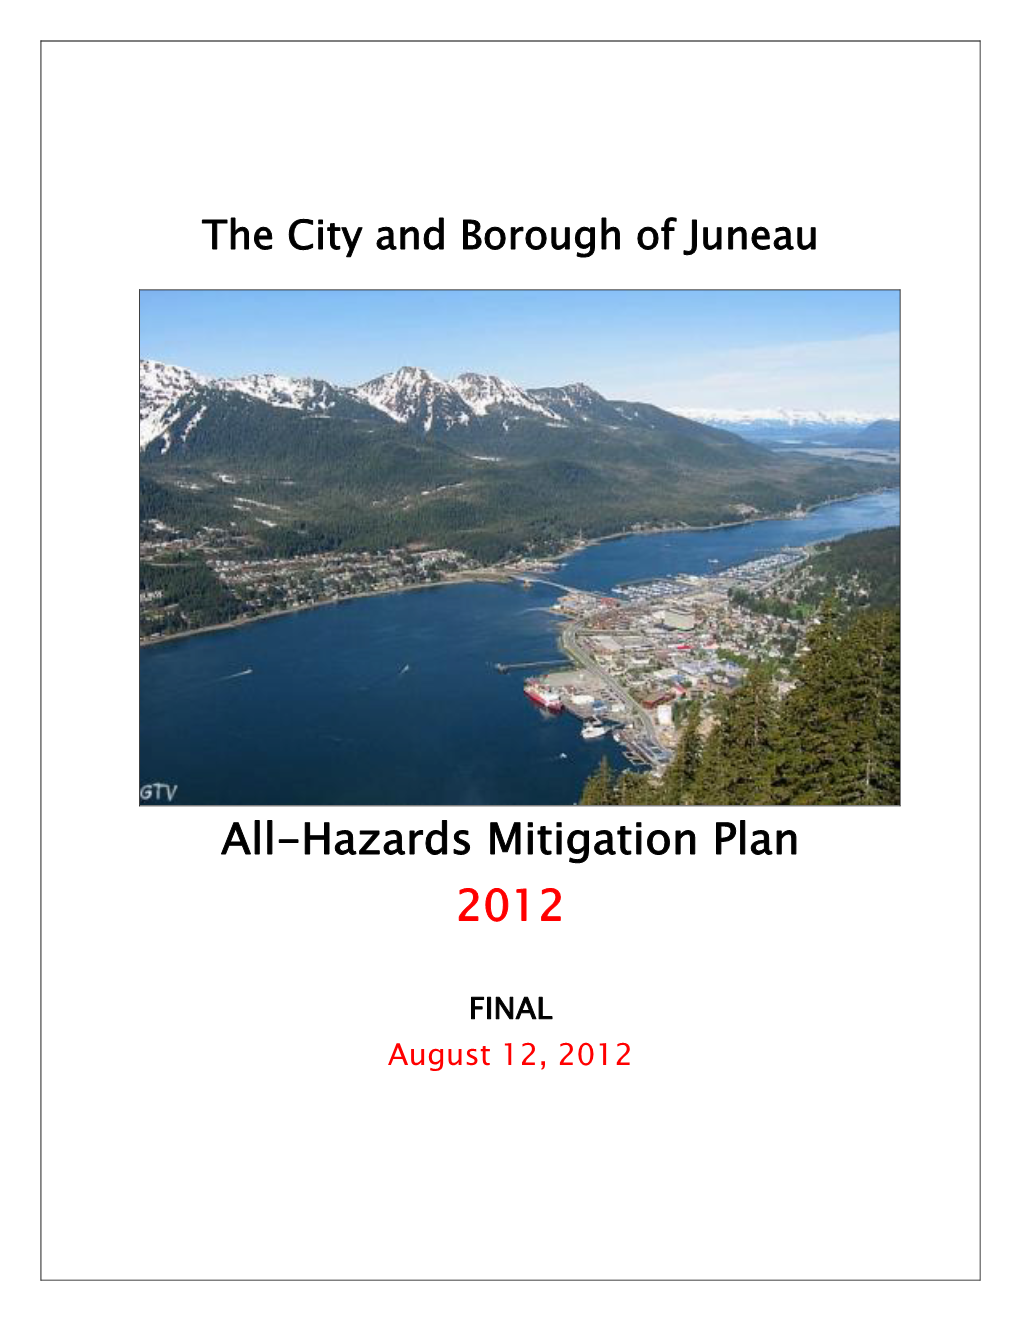 All-Hazards Mitigation Plan 2012